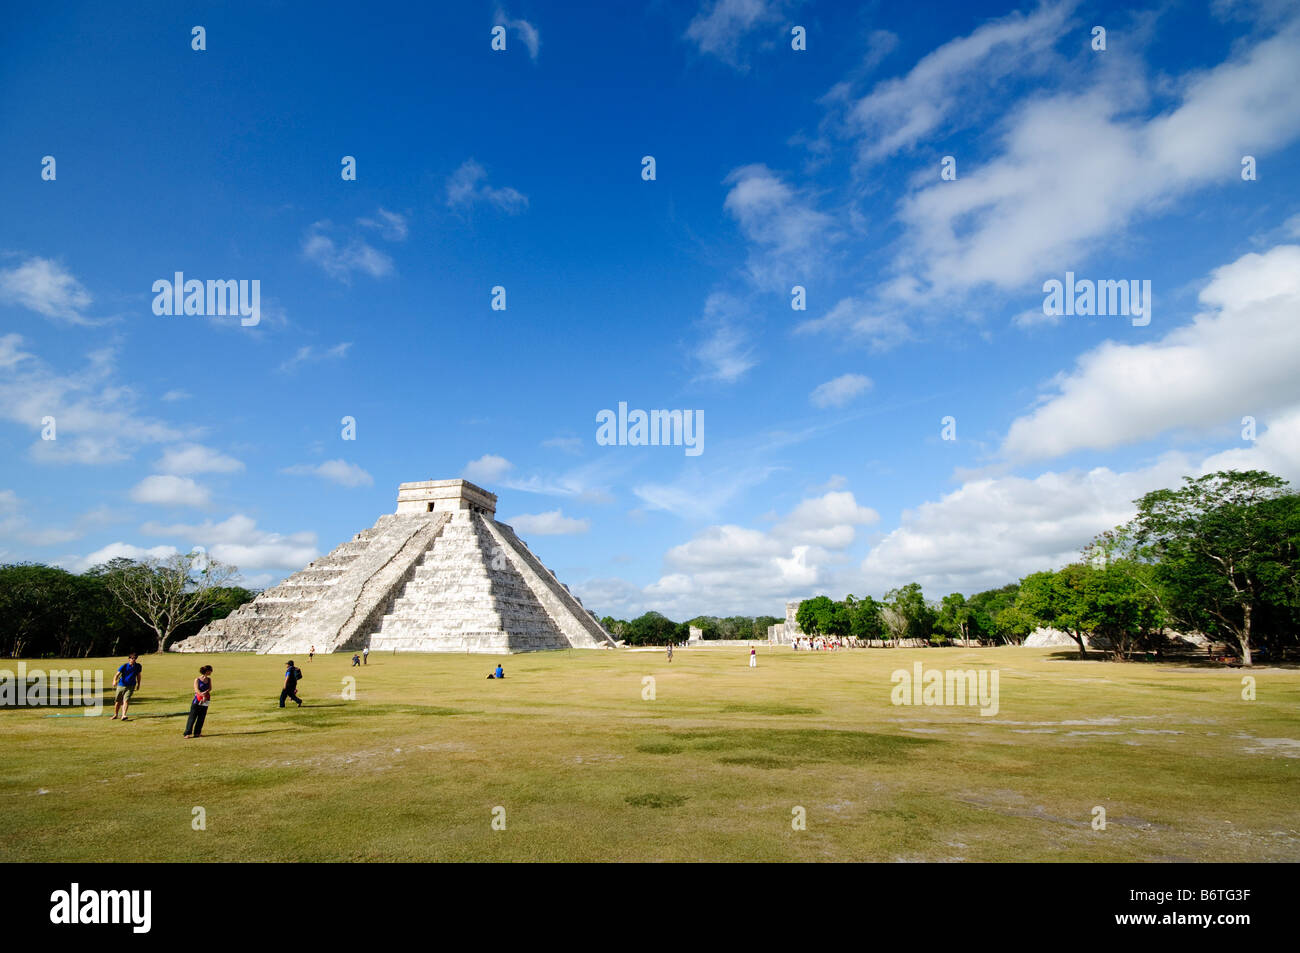 CHICHEN ITZA, Mexique - Templo de los Guerreros (Temple des guerriers) aux ruines mayas anciennes de Chichen Itza, Yucatan, Mexique 081216094326 4470.NEF. Chichen Itza, situé sur la péninsule du Yucatan au Mexique, est un site archéologique important présentant la riche histoire et les connaissances scientifiques avancées de la civilisation maya antique. Il est plus connu pour la Pyramide Kukulkan, ou « El Castillo », une structure à quatre côtés avec 91 marches de chaque côté, culminant en une seule étape au sommet pour représenter les 365 jours de l'année solaire. Banque D'Images